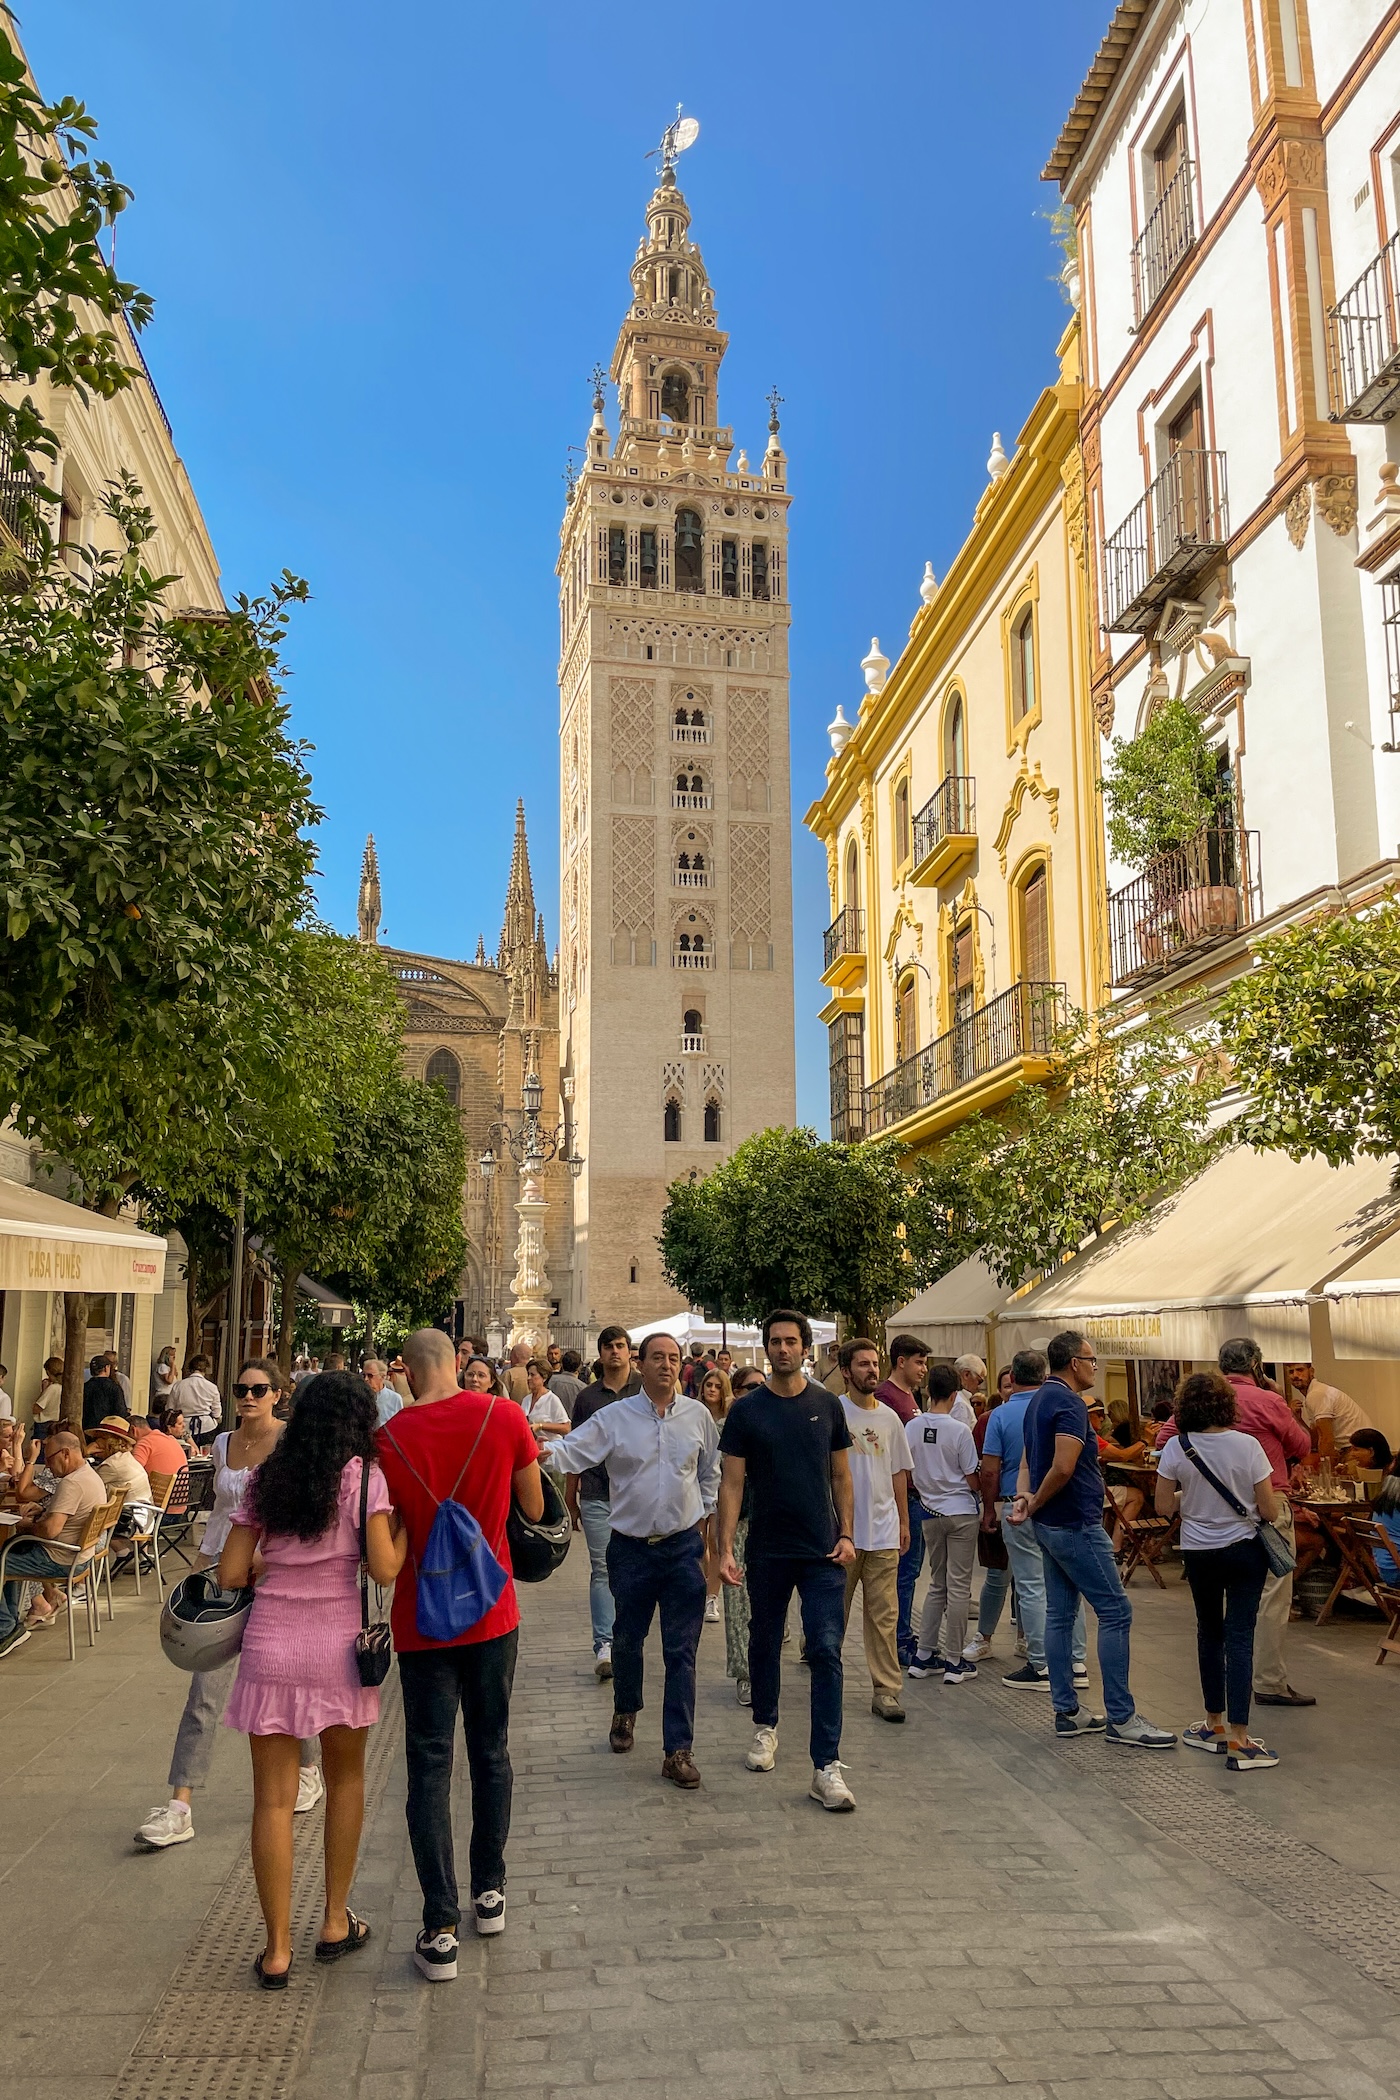 De leukste tips voor bezienswaardigheden en wat te doen in Sevilla